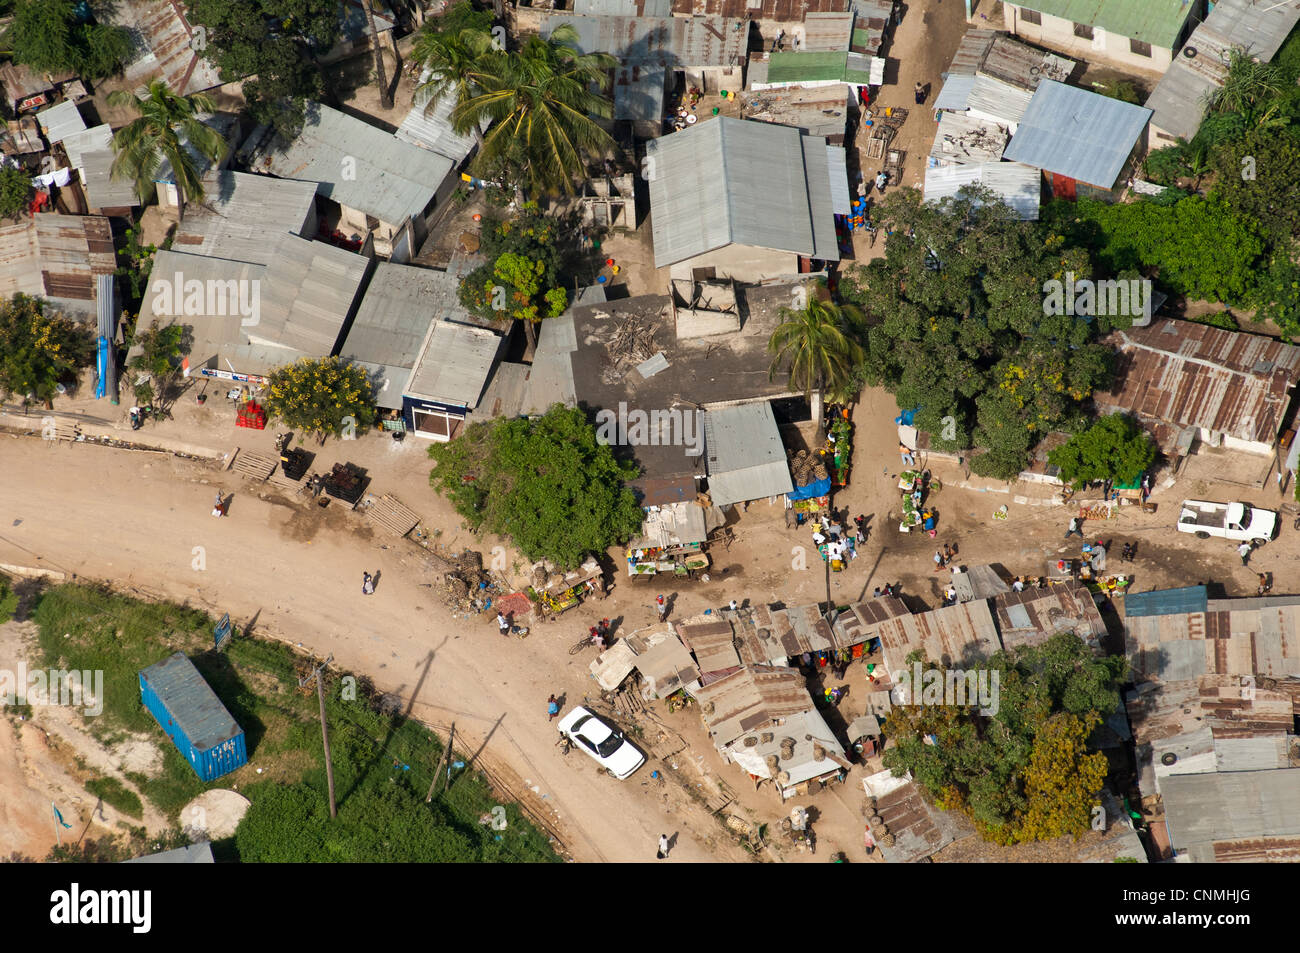 Petits commerces au détour d'une route, vue aérienne, Dar es Salaam, Tanzanie Banque D'Images